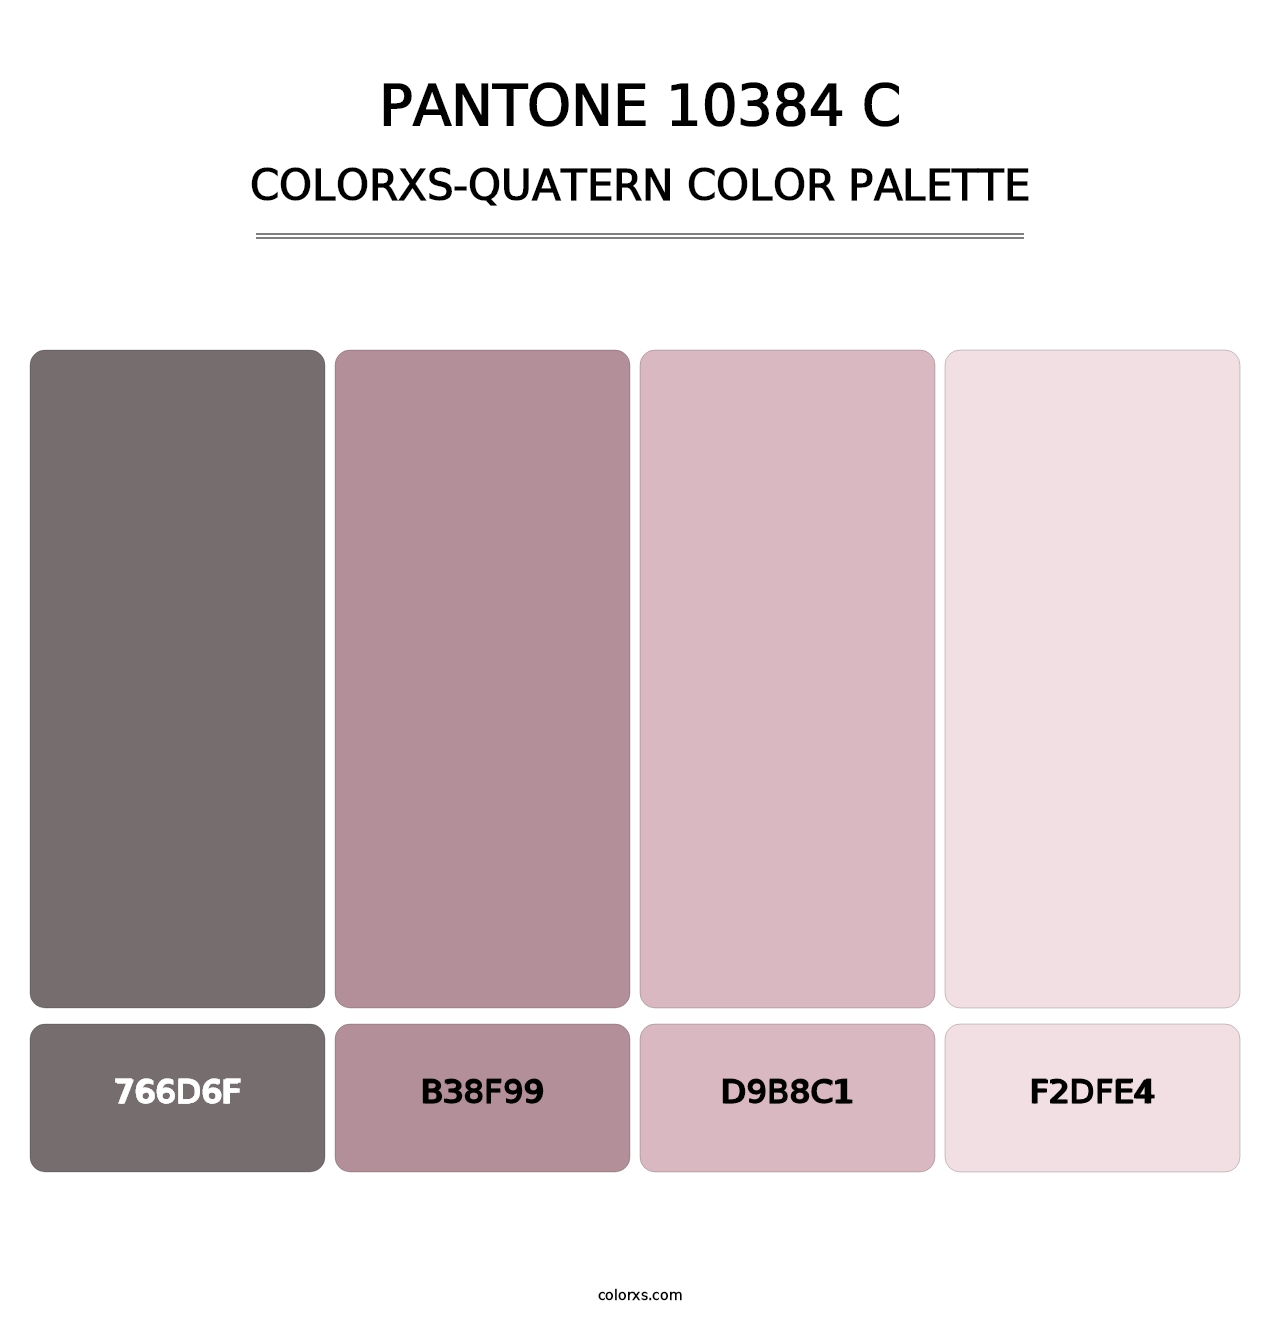 PANTONE 10384 C - Colorxs Quatern Palette